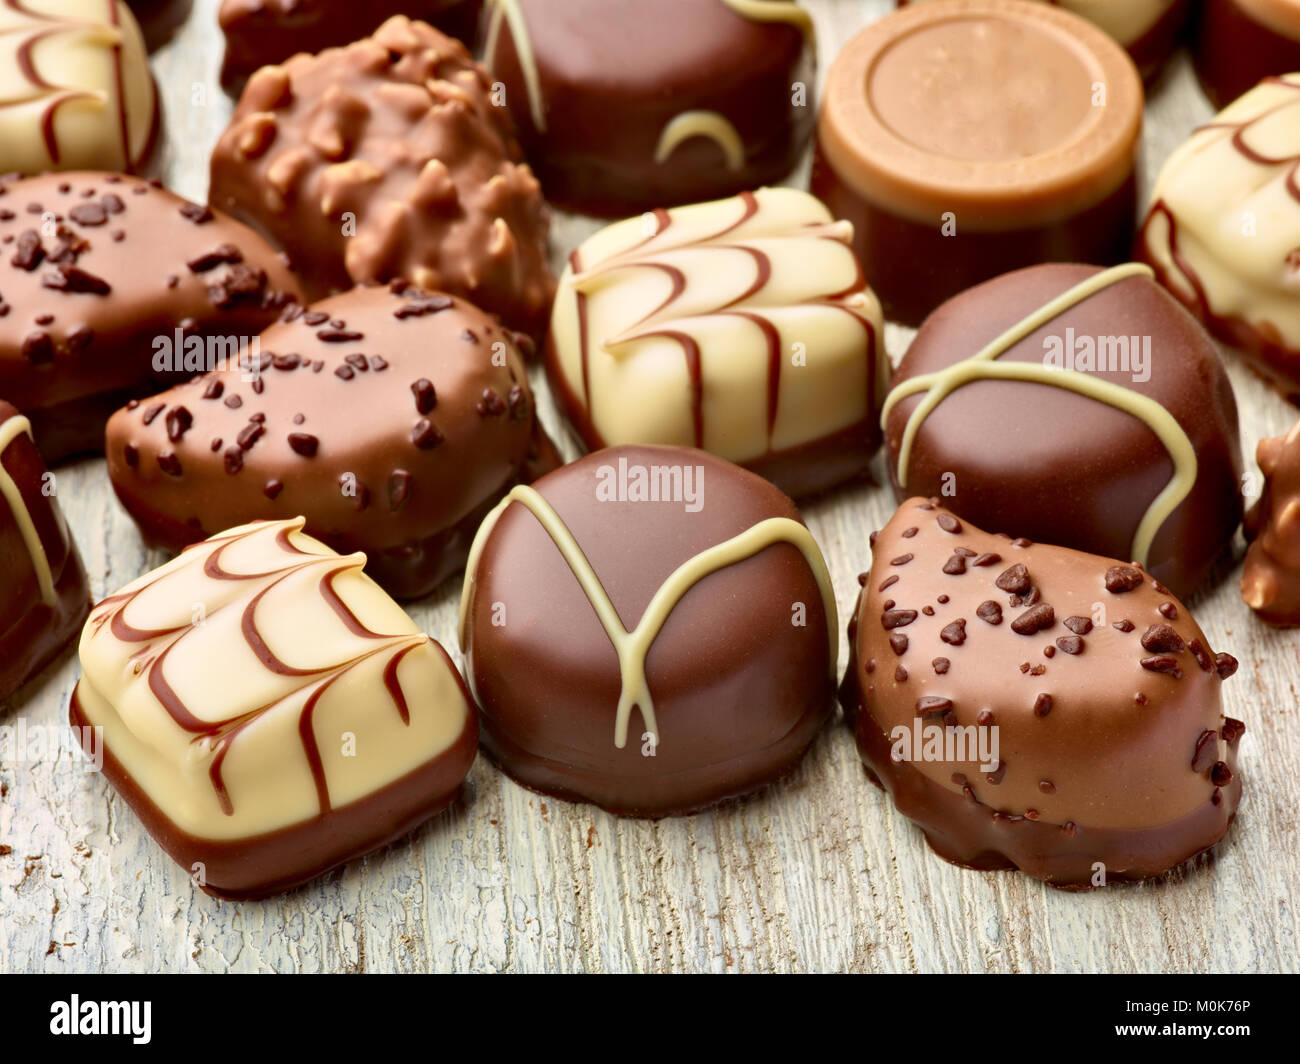 Close up de praliné au chocolat sur fond de bois Banque D'Images